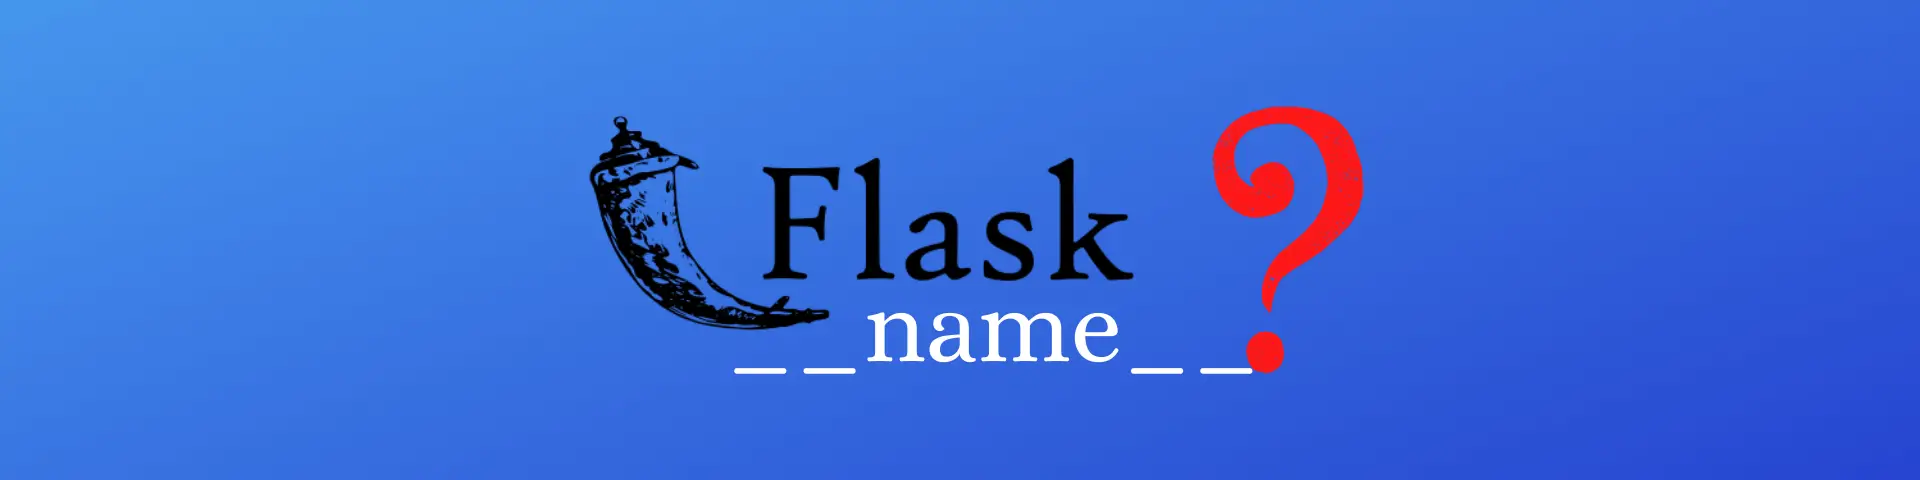 python __name__ flask